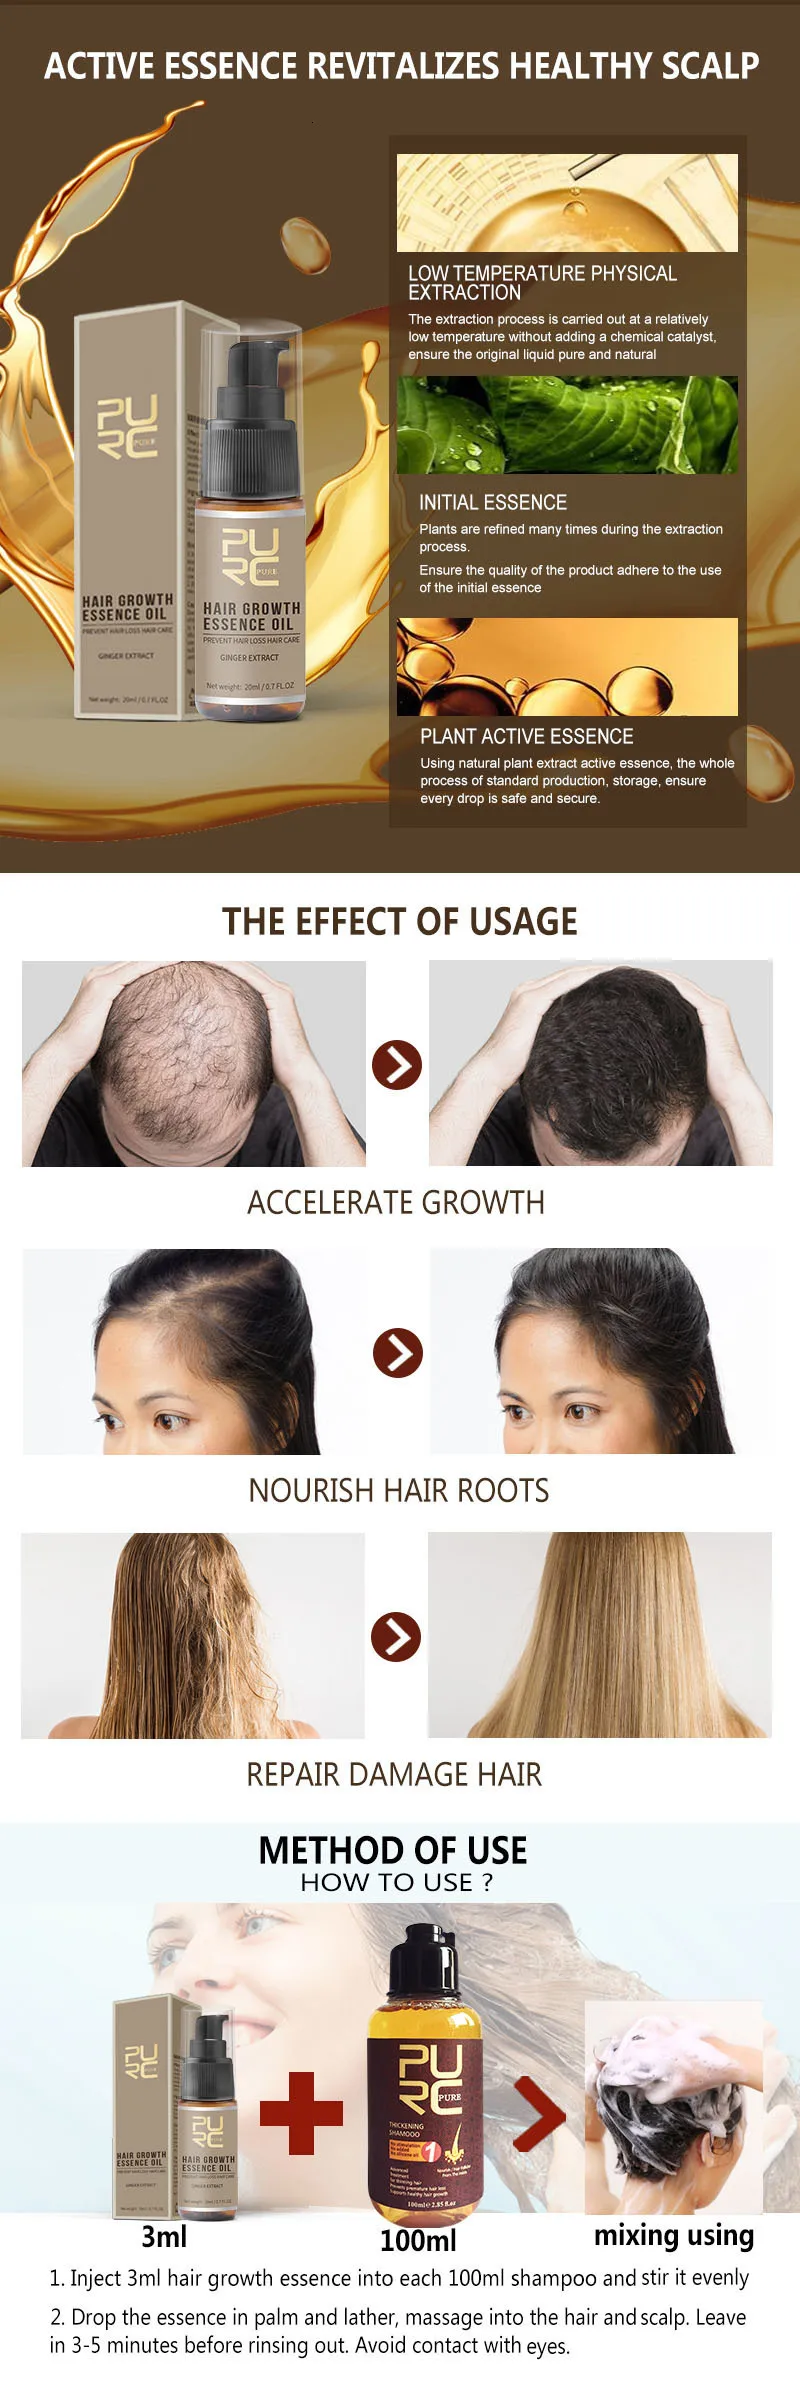 Purc Rapid Hair Growth Hot Hair Treatment Loss Of Essence Oil Hair Help For Hair Growth Watch 20 Ml Hair